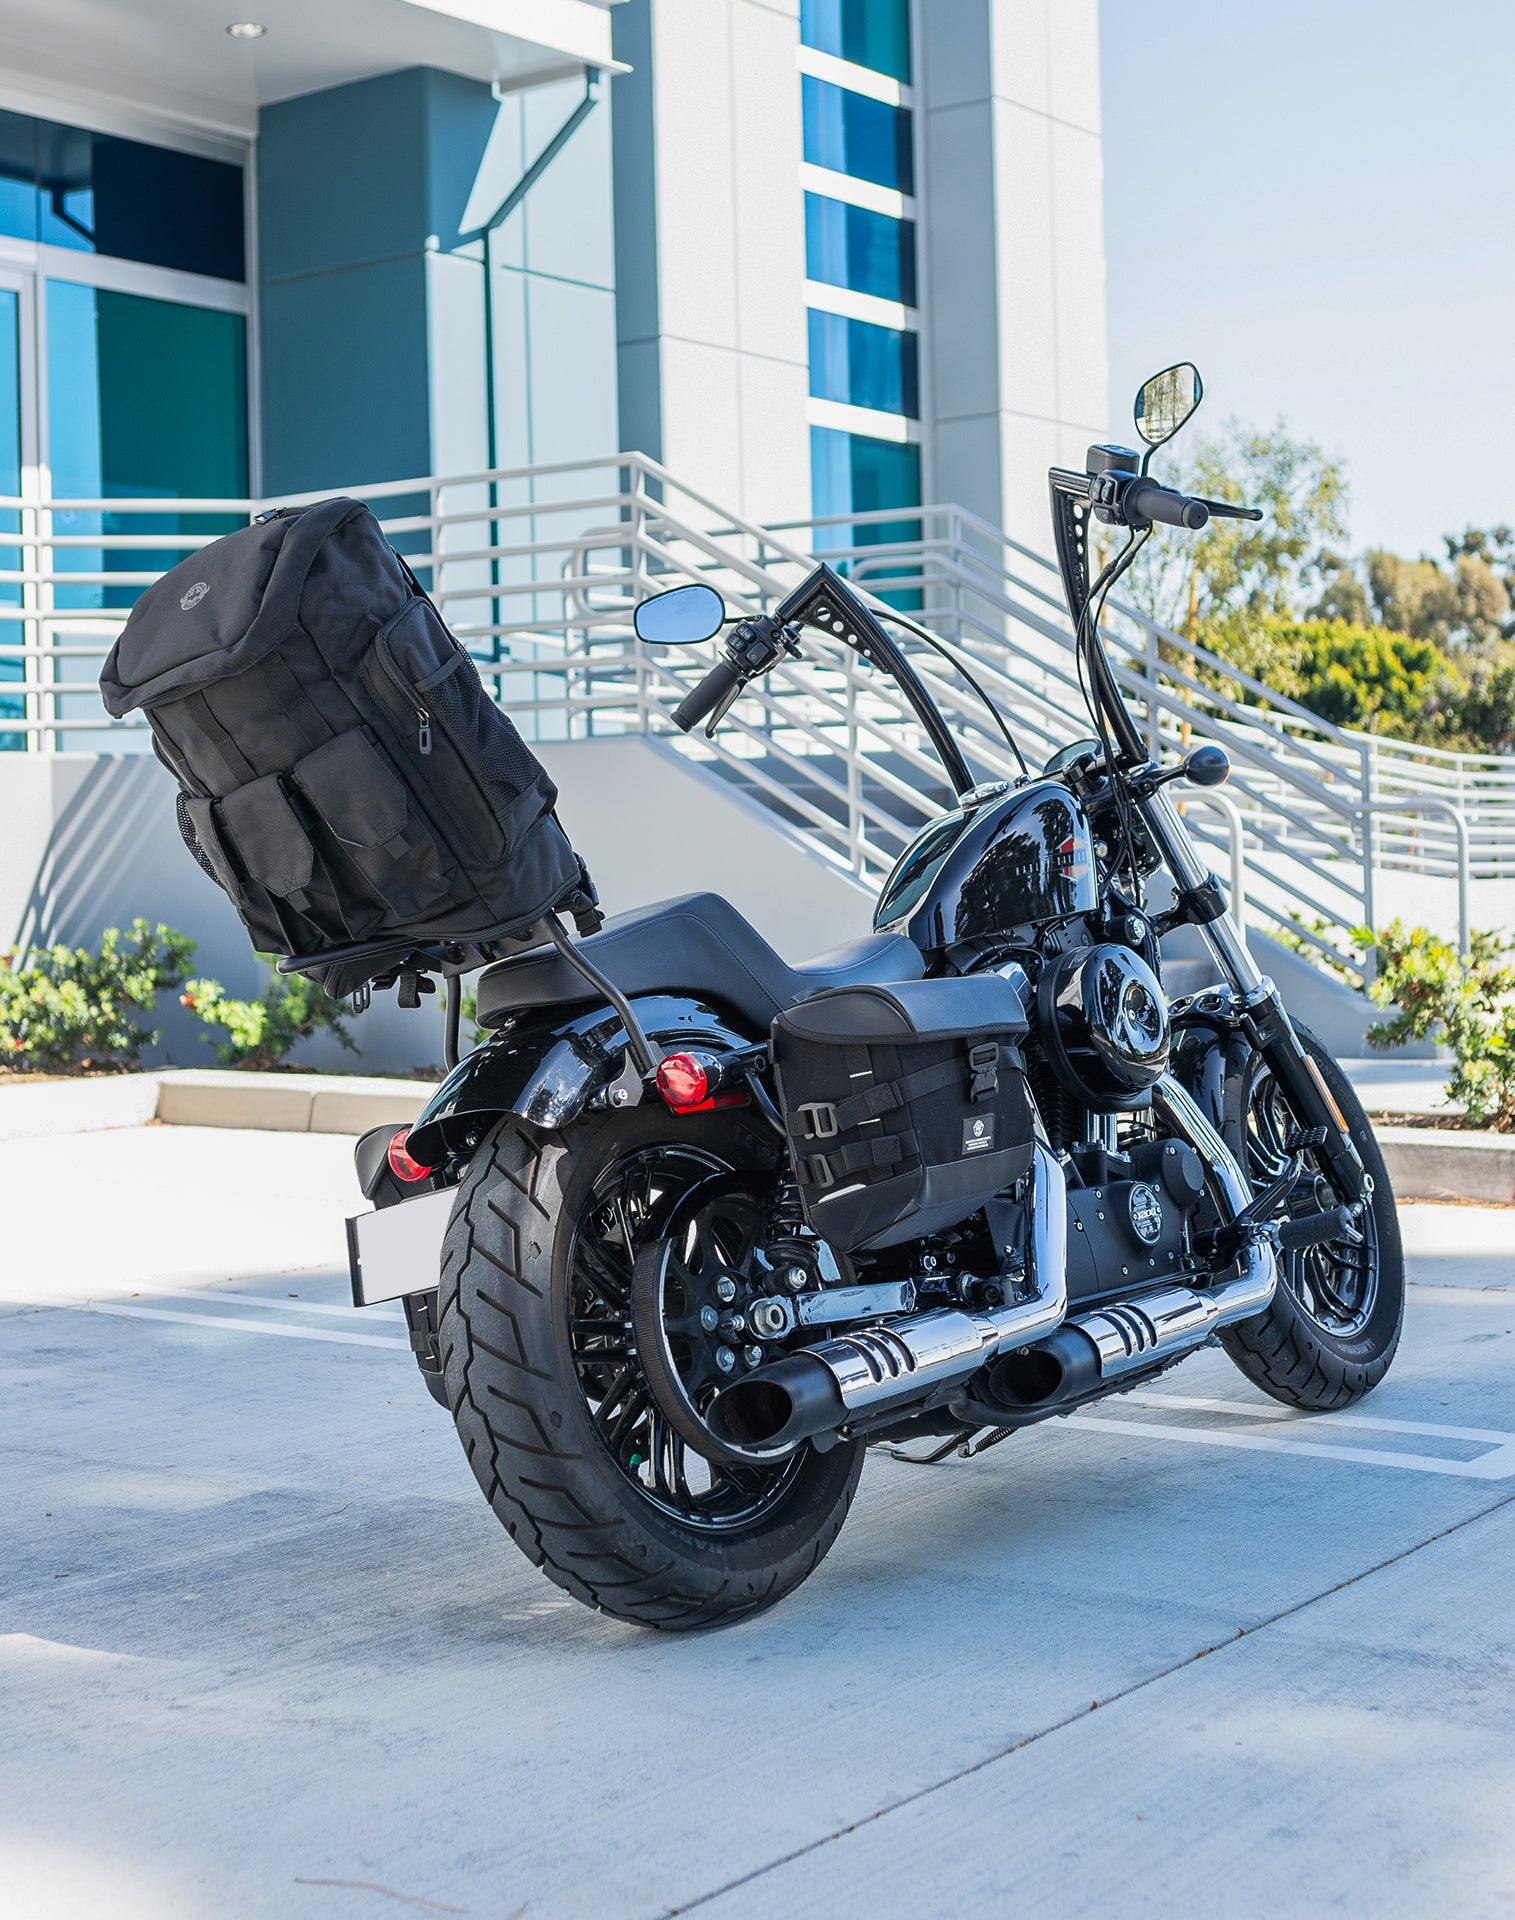 32L - Trident Large Kawasaki Motorcycle Backpack